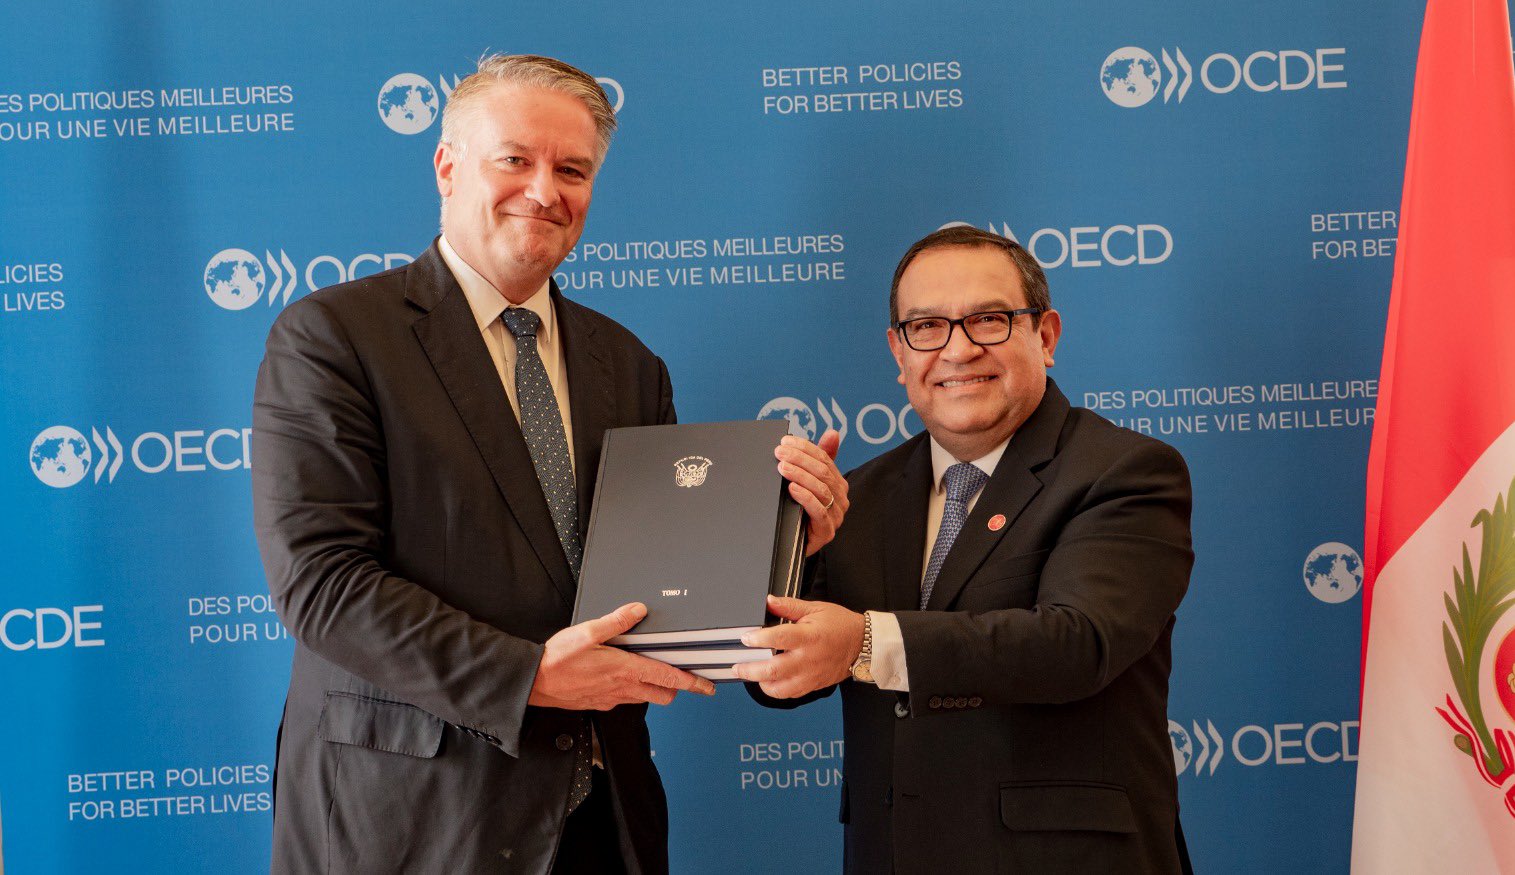 El presidente del Consejo de Ministros, Alberto Otárola, presentó el documento al secretario general de la Organización para la Cooperación y el Desarrollo Económicos (OCDE), Mathias Cormann, para que Perú se integre a organismo internacional. Fuente: PCM.